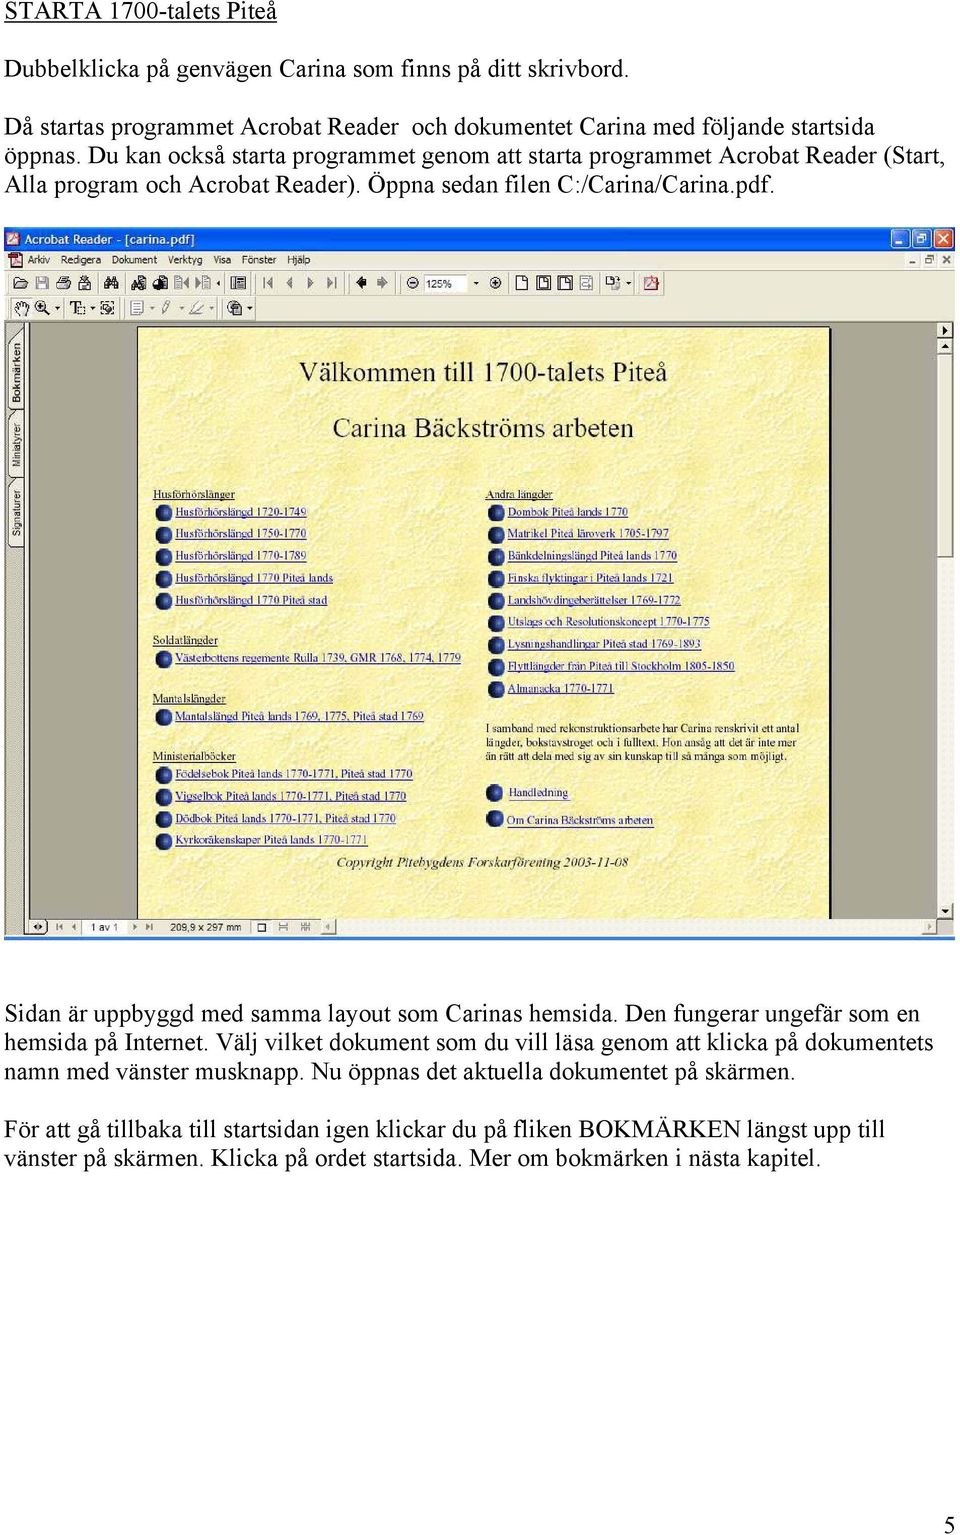 Sidan är uppbyggd med samma layout som Carinas hemsida. Den fungerar ungefär som en hemsida på Internet.